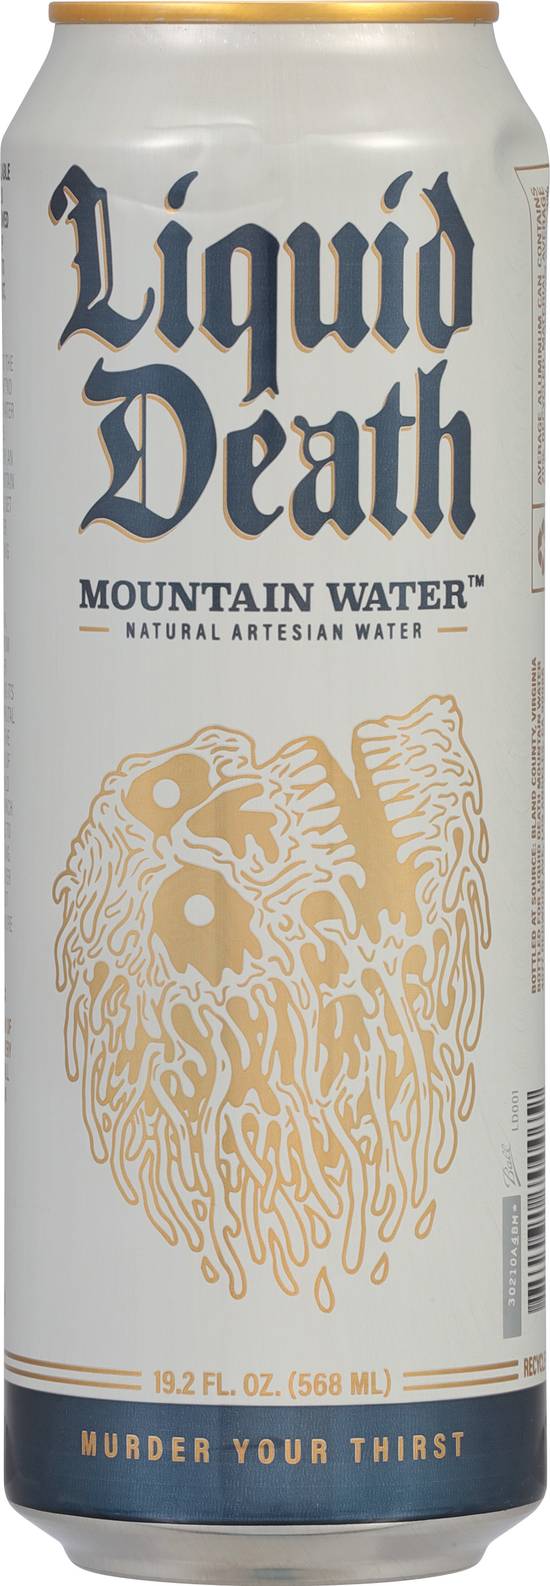 Liquid Death Mountain Water (19.2oz can)